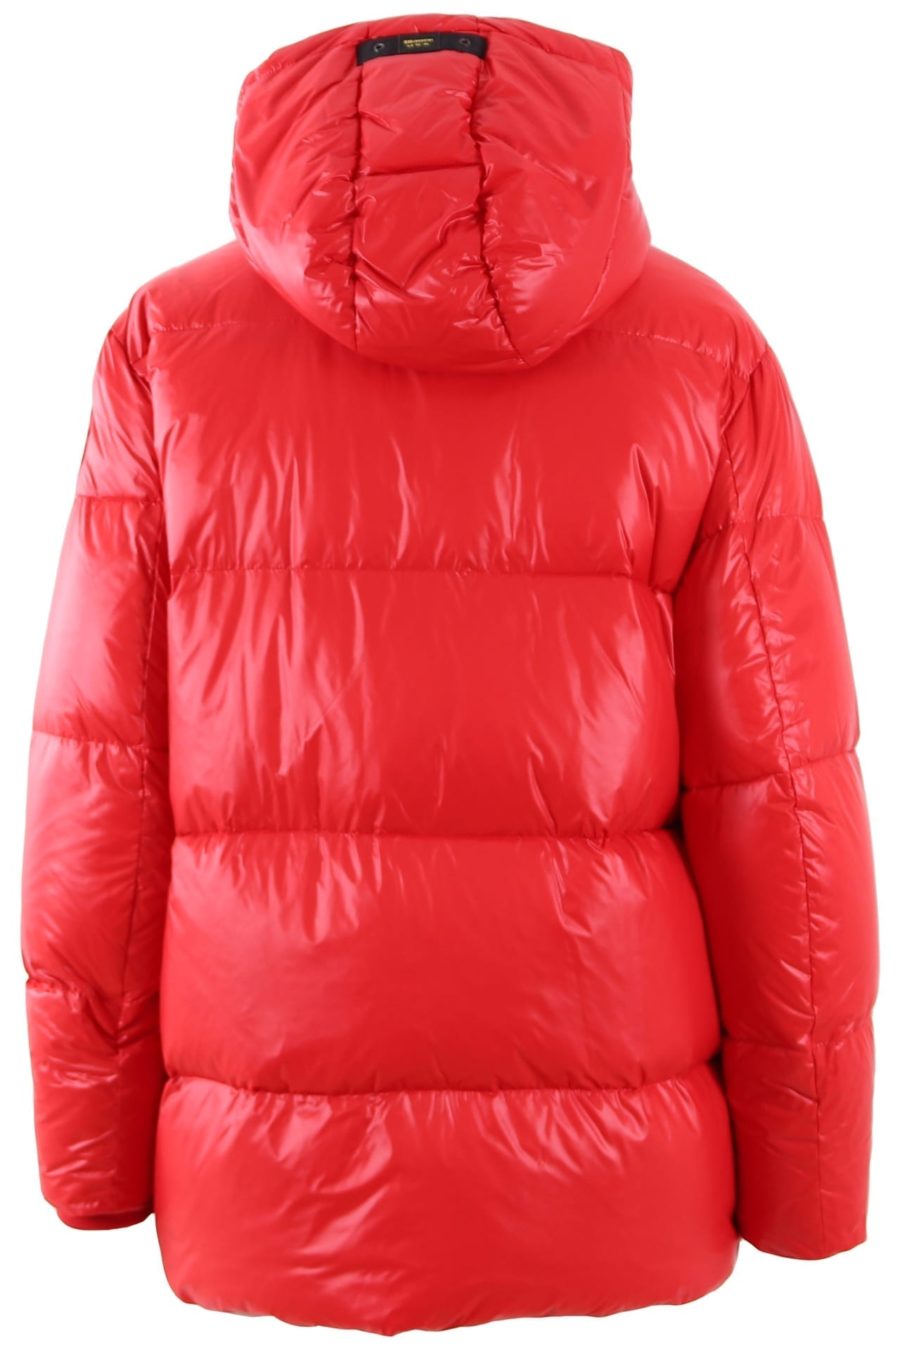 Blauer casaco vermelho com capuz e fechos de pressão - 2472b15c3acfa04f77ddfc28511e5e54720e1cd9